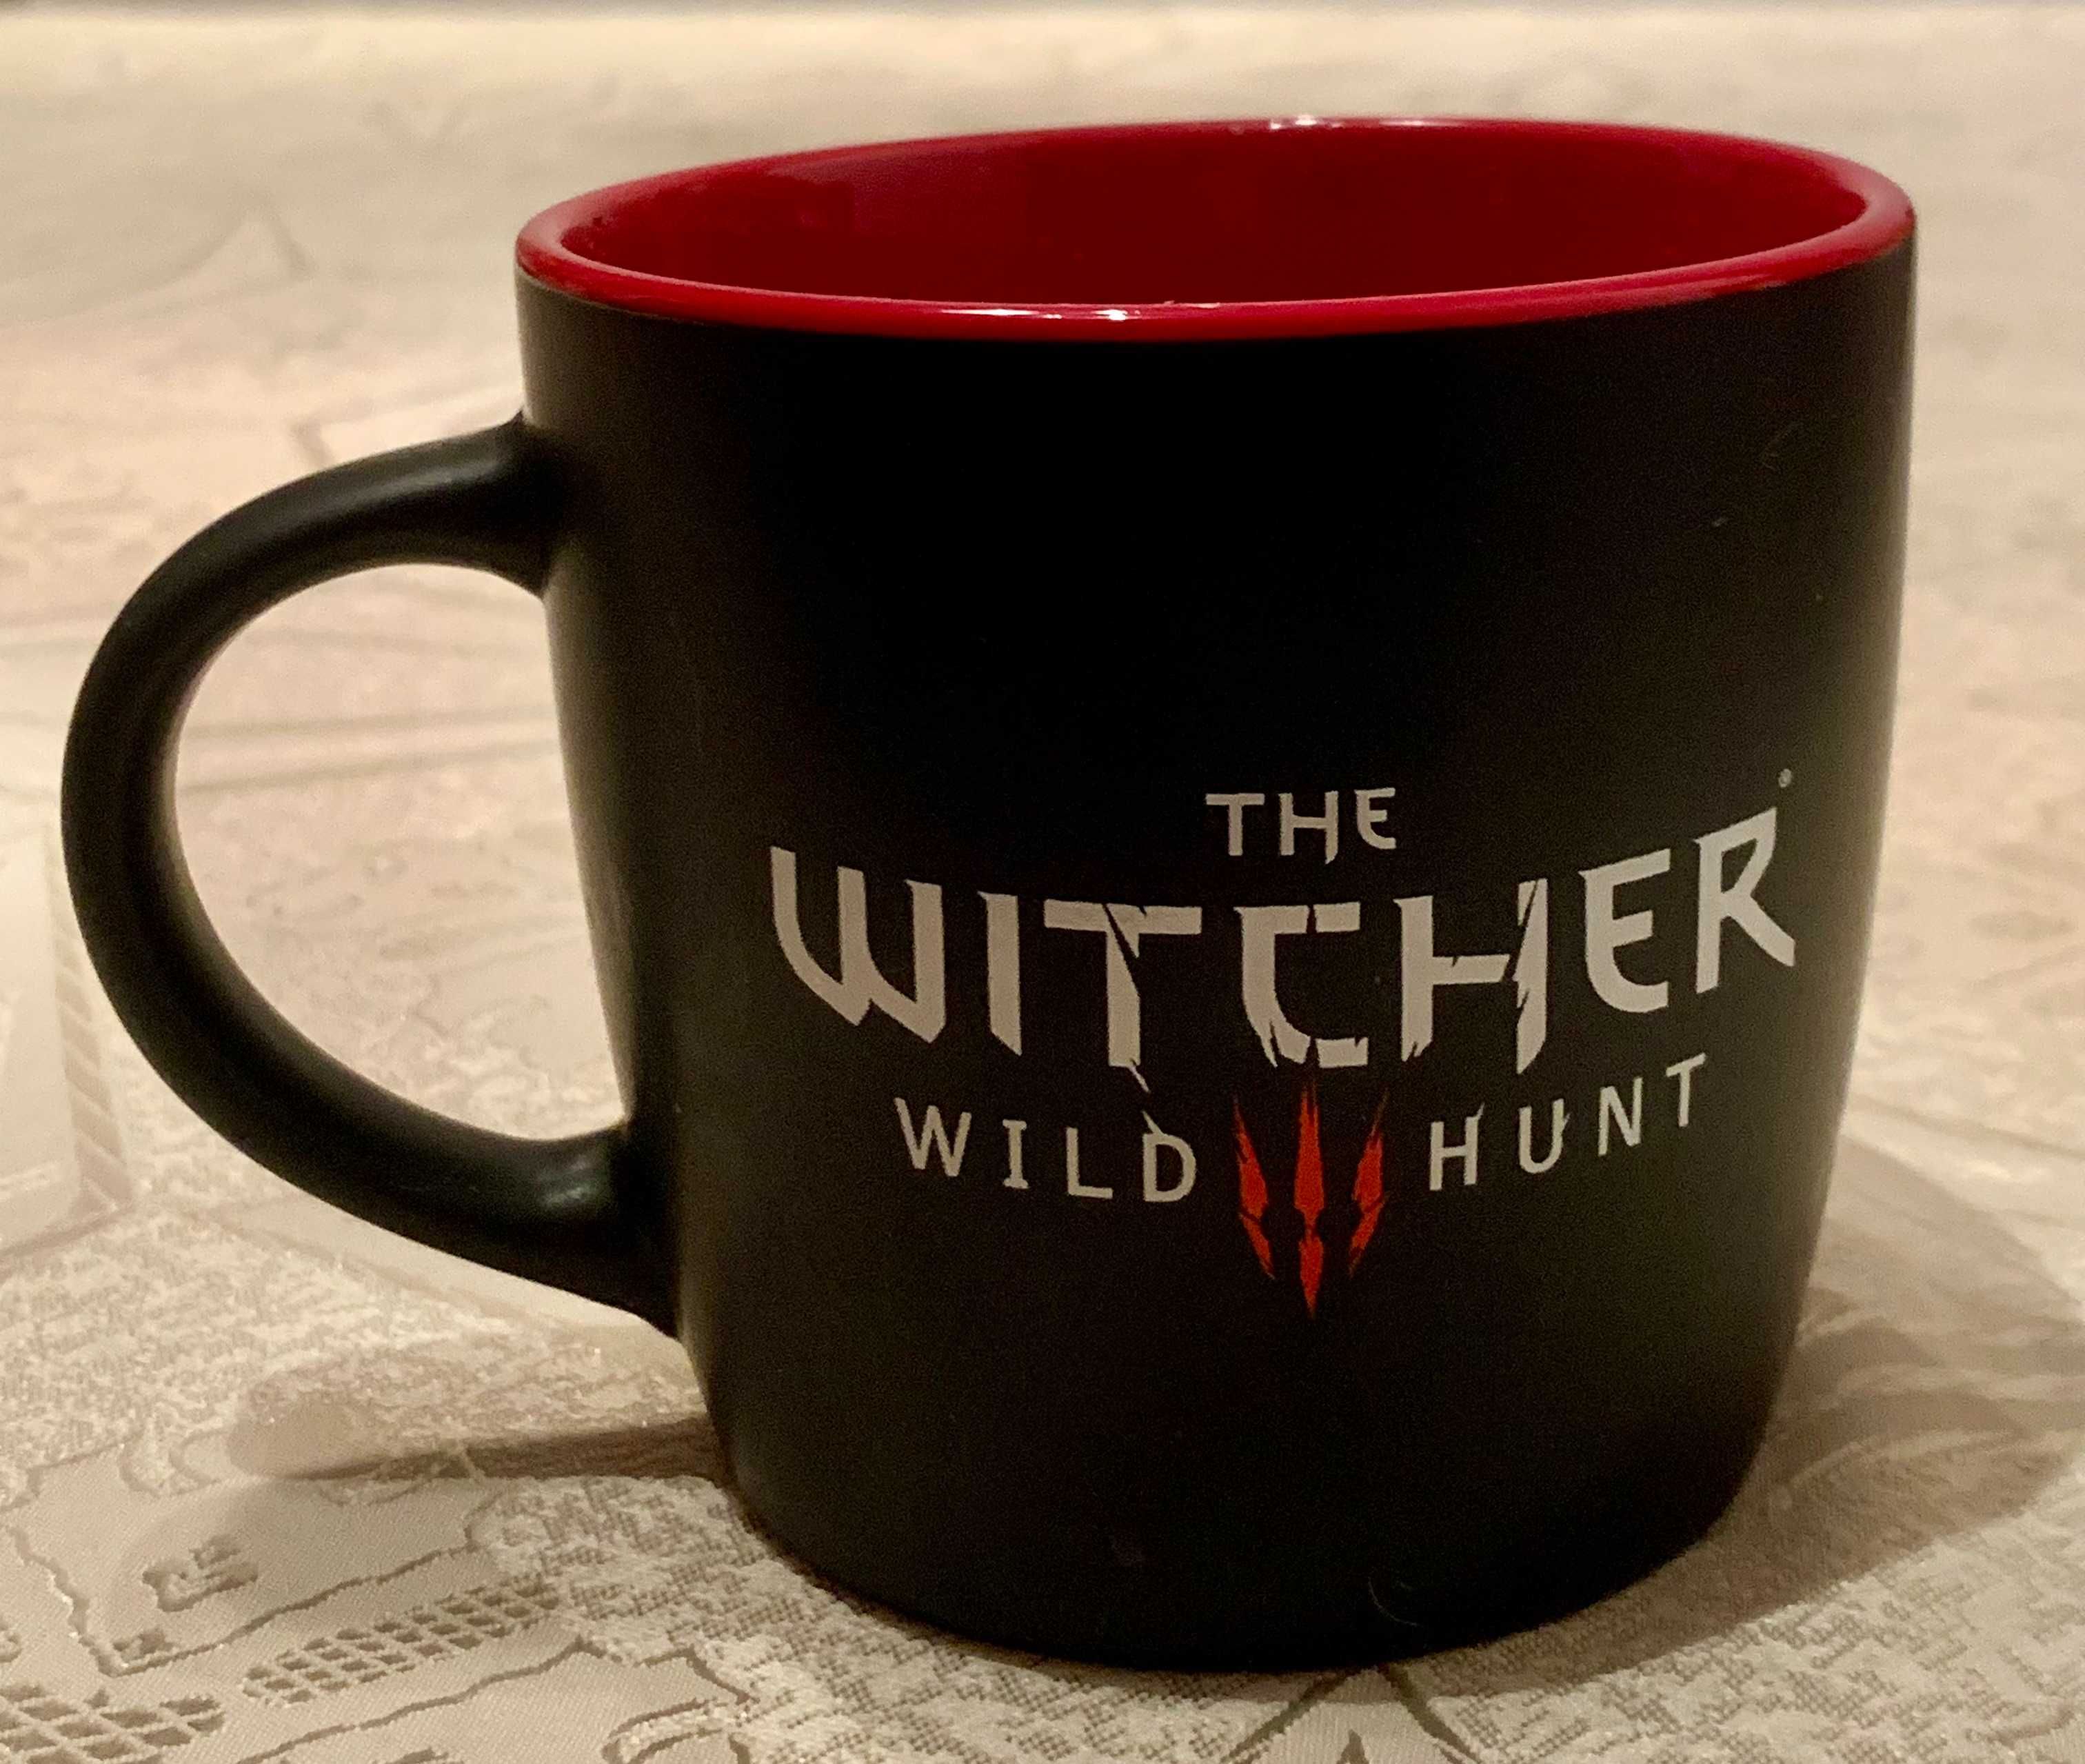 The Witcher Wild Hunt KUBEK NOWY limit ceramika Dziki Gon, Wiedzmin